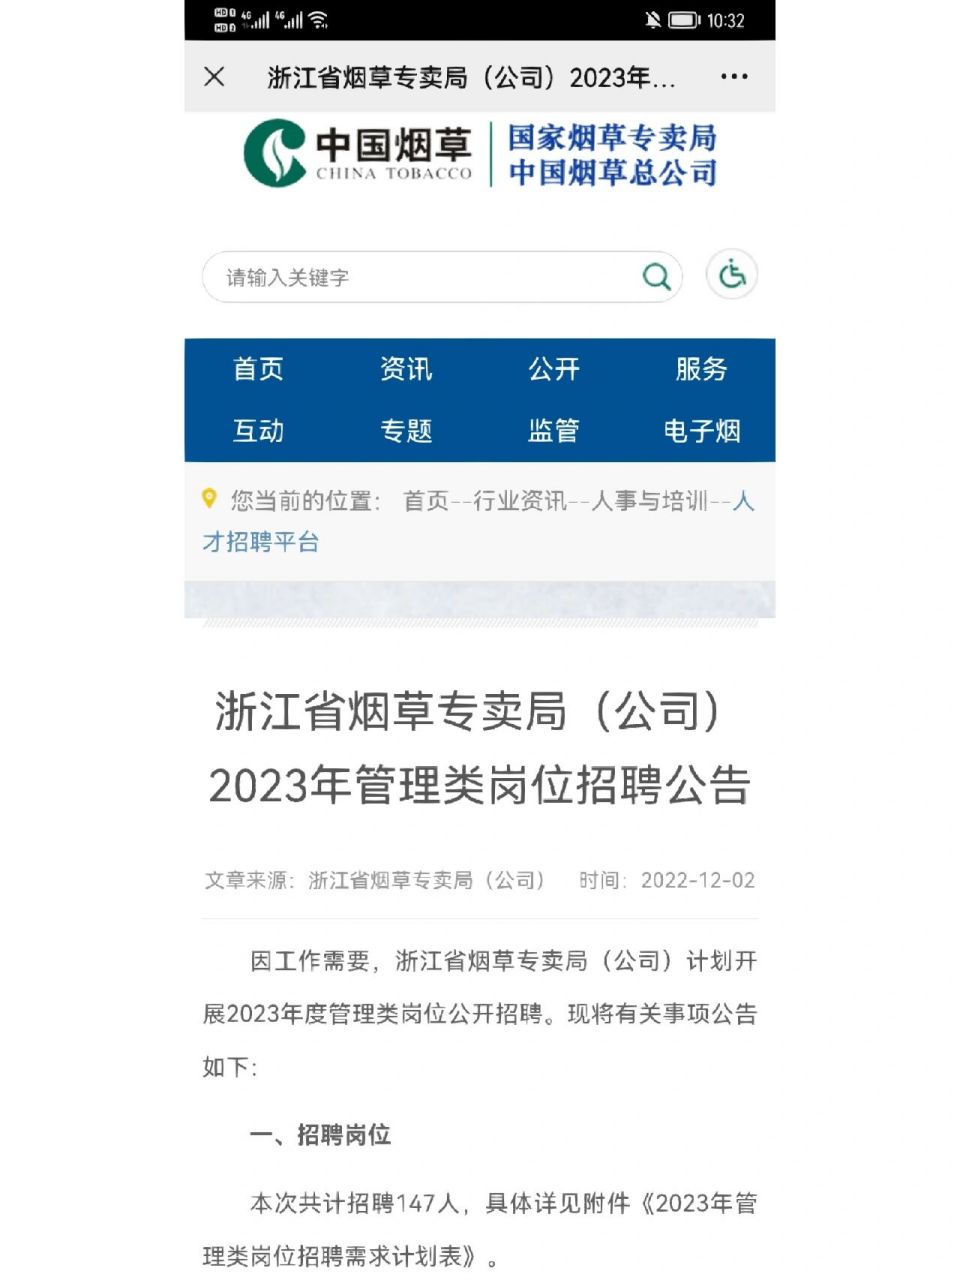 因工作需要,浙江省烟草专卖局(公司)计划开展2023年度管理类岗位公开